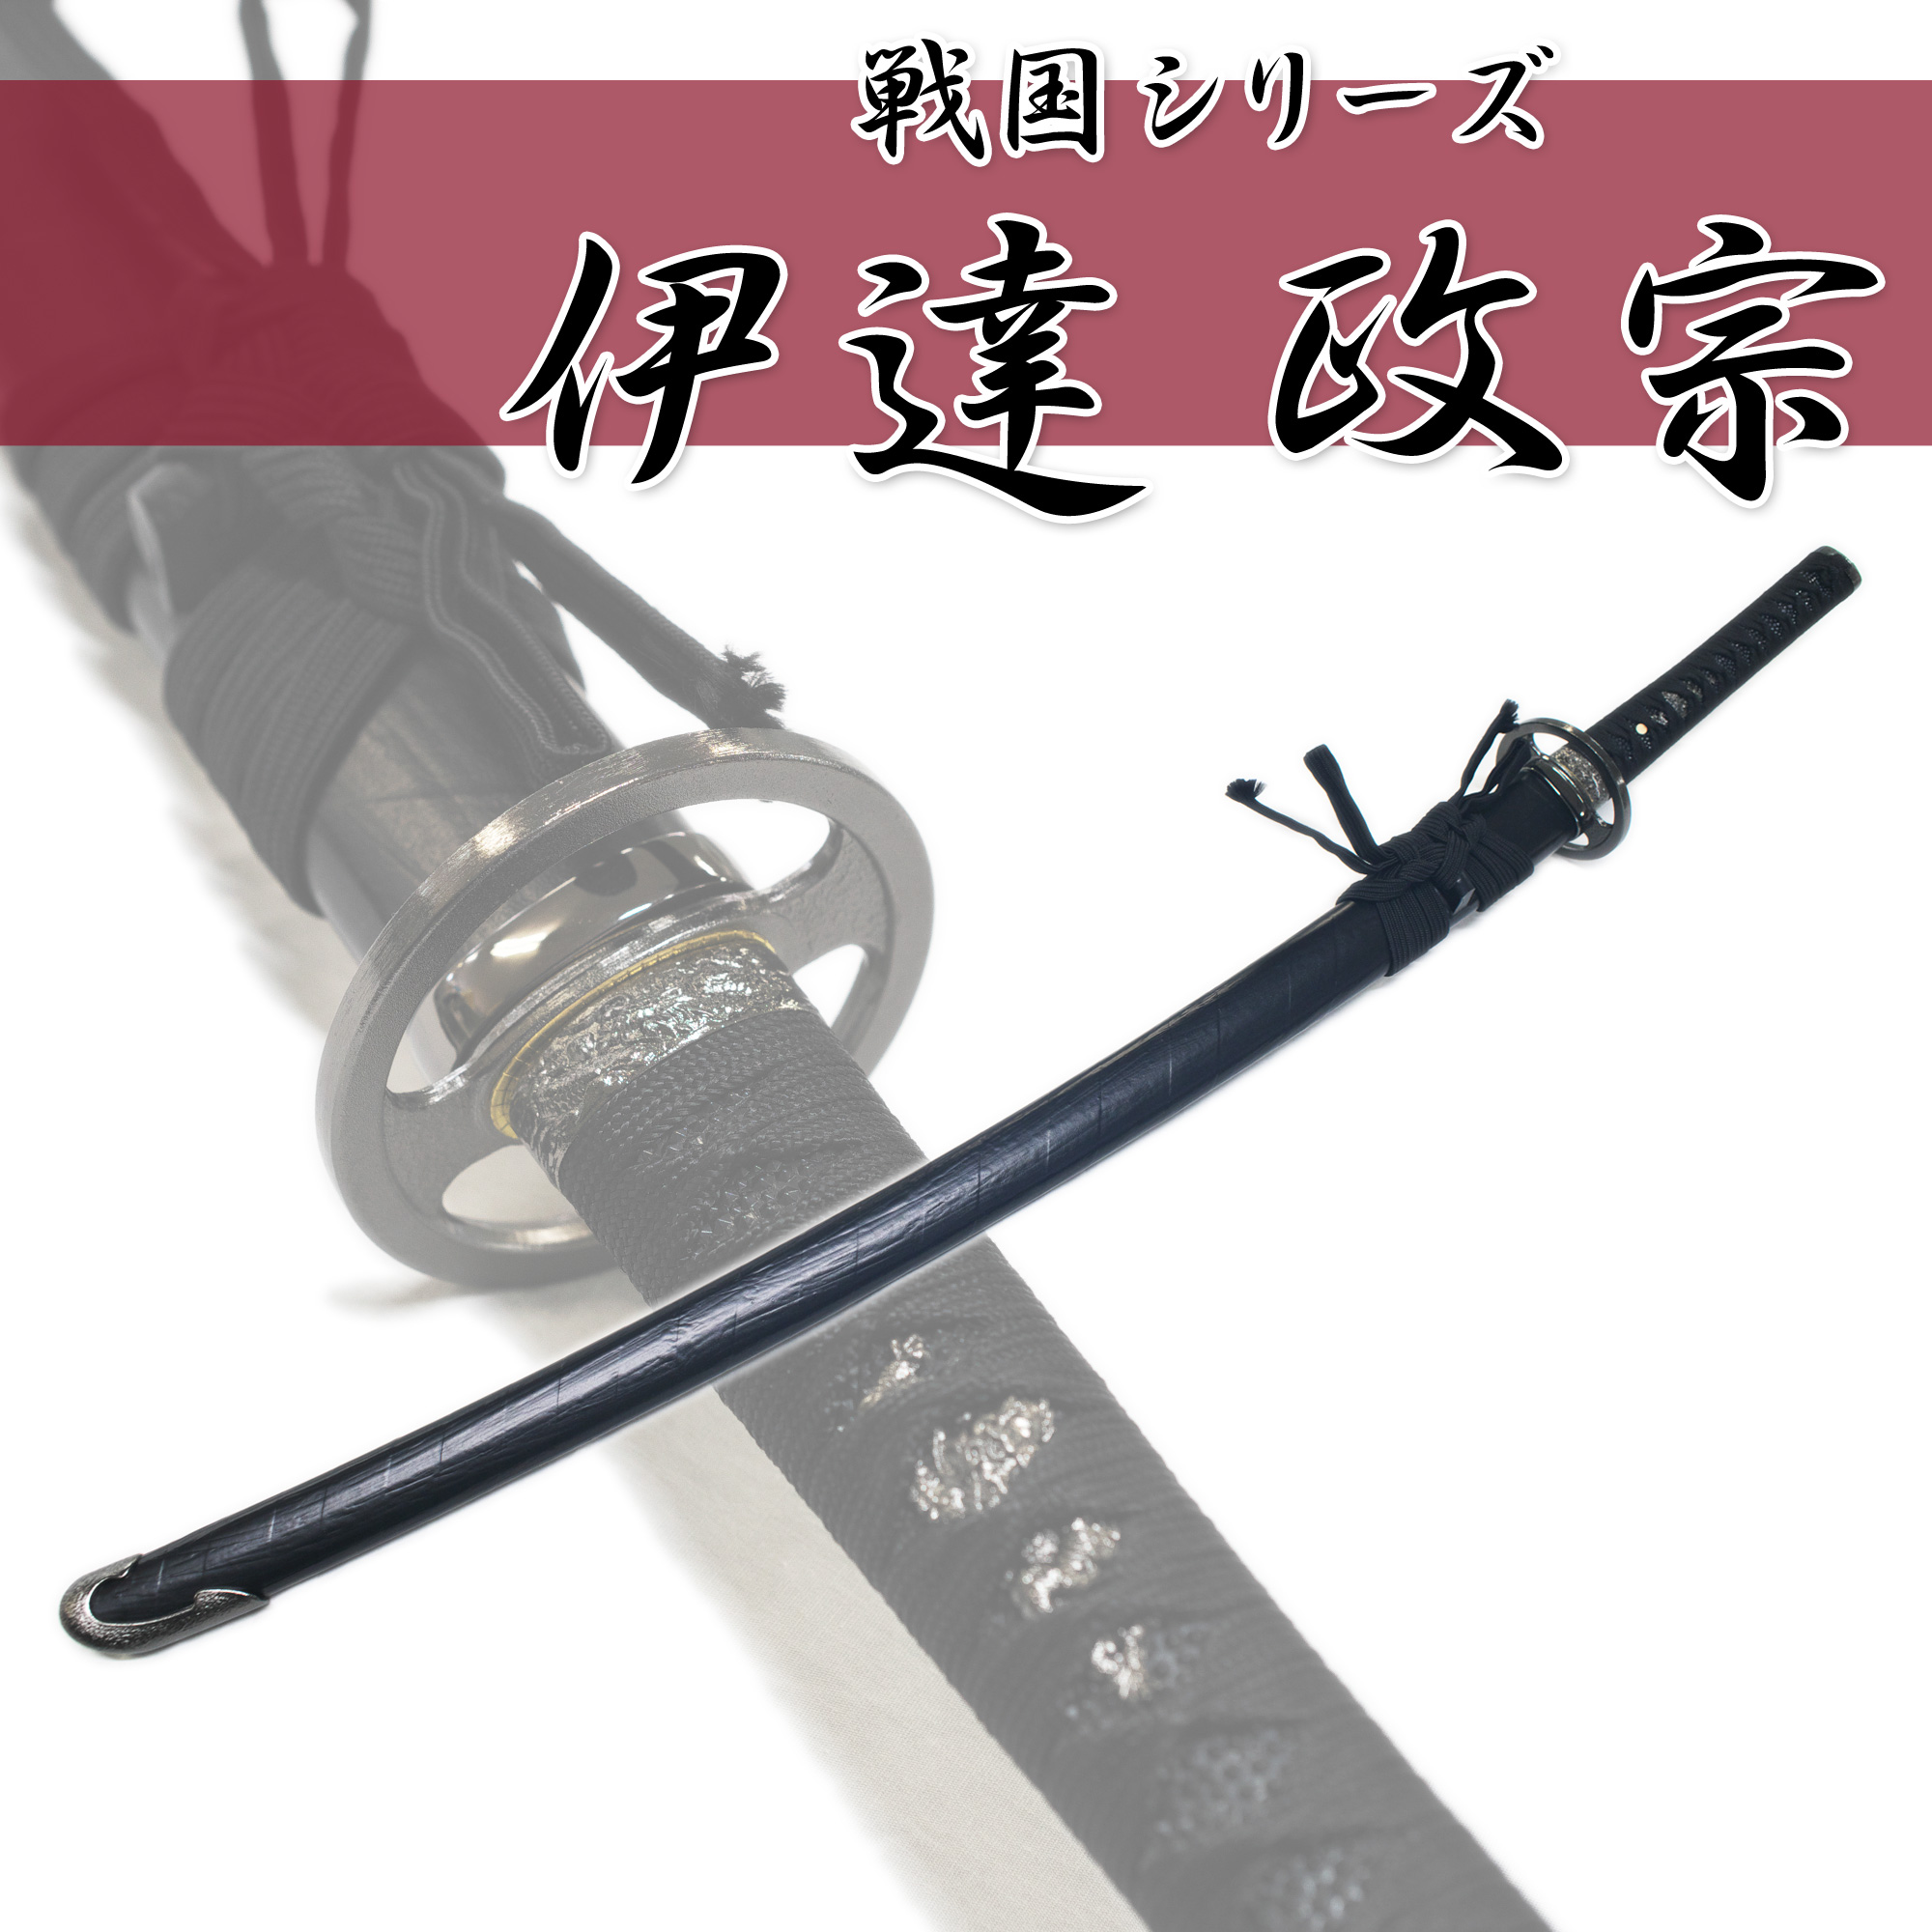 匠刀房 伊達政宗 拵 NEU-015 - 戦国シリーズ 大刀 模造刀